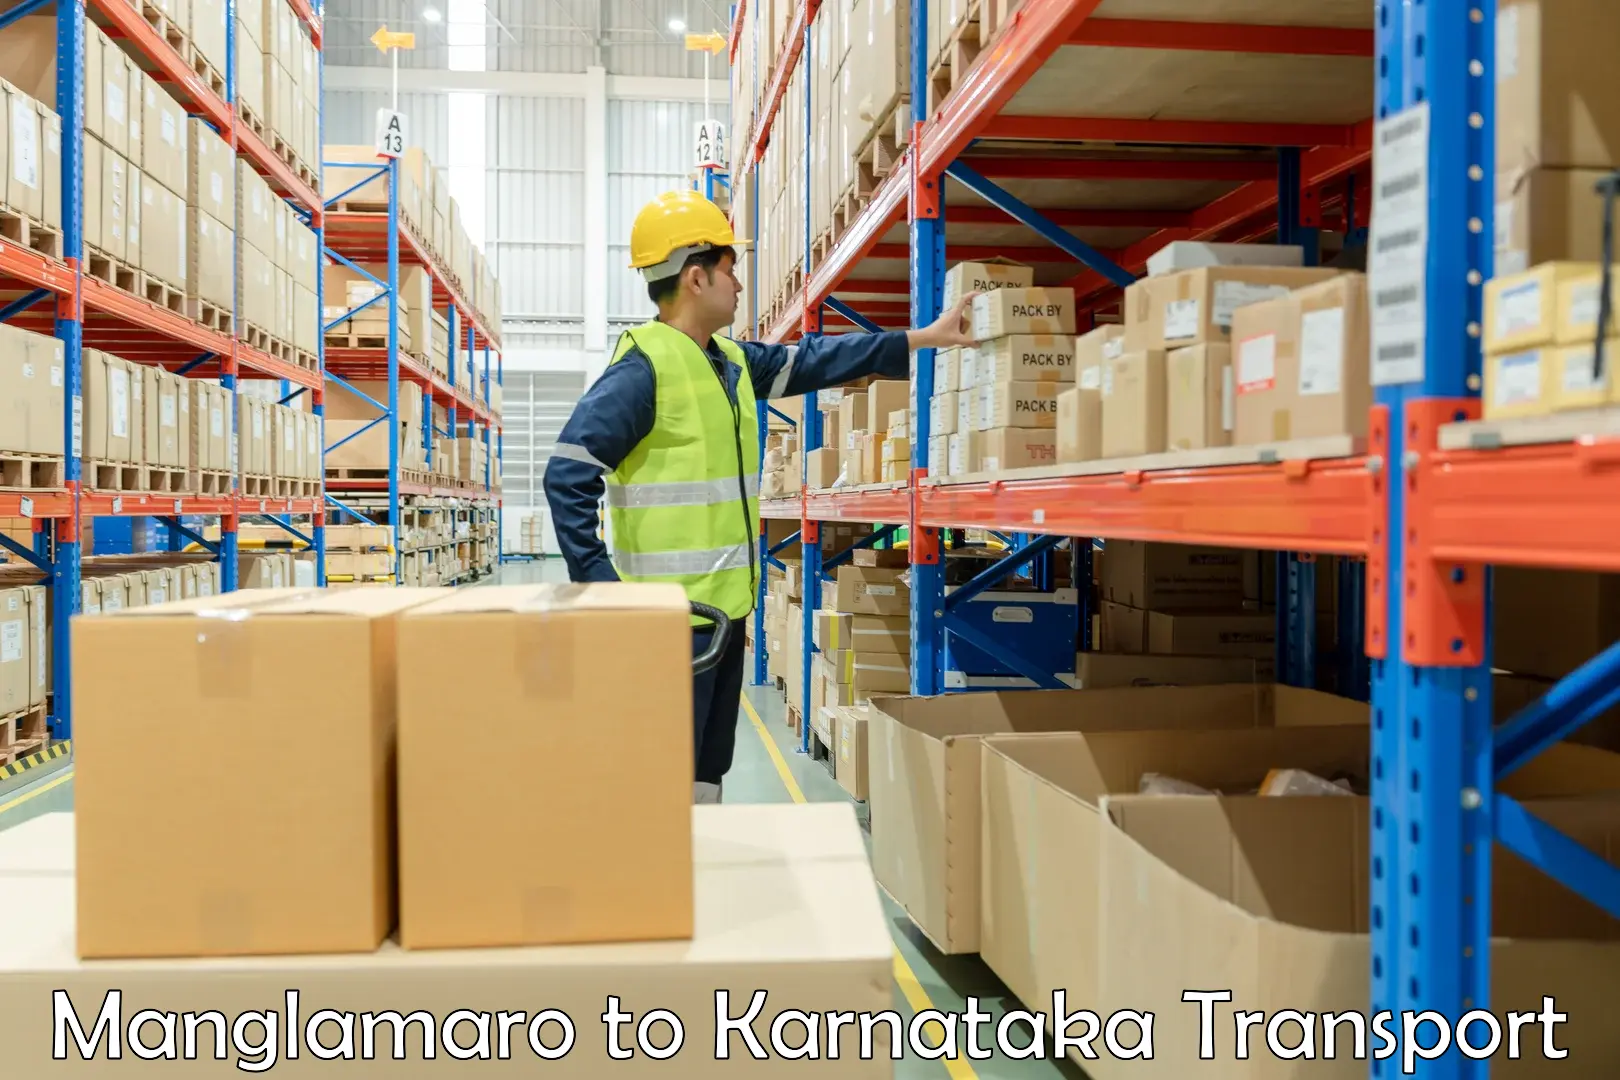 Furniture transport service Manglamaro to Krishnarajpete